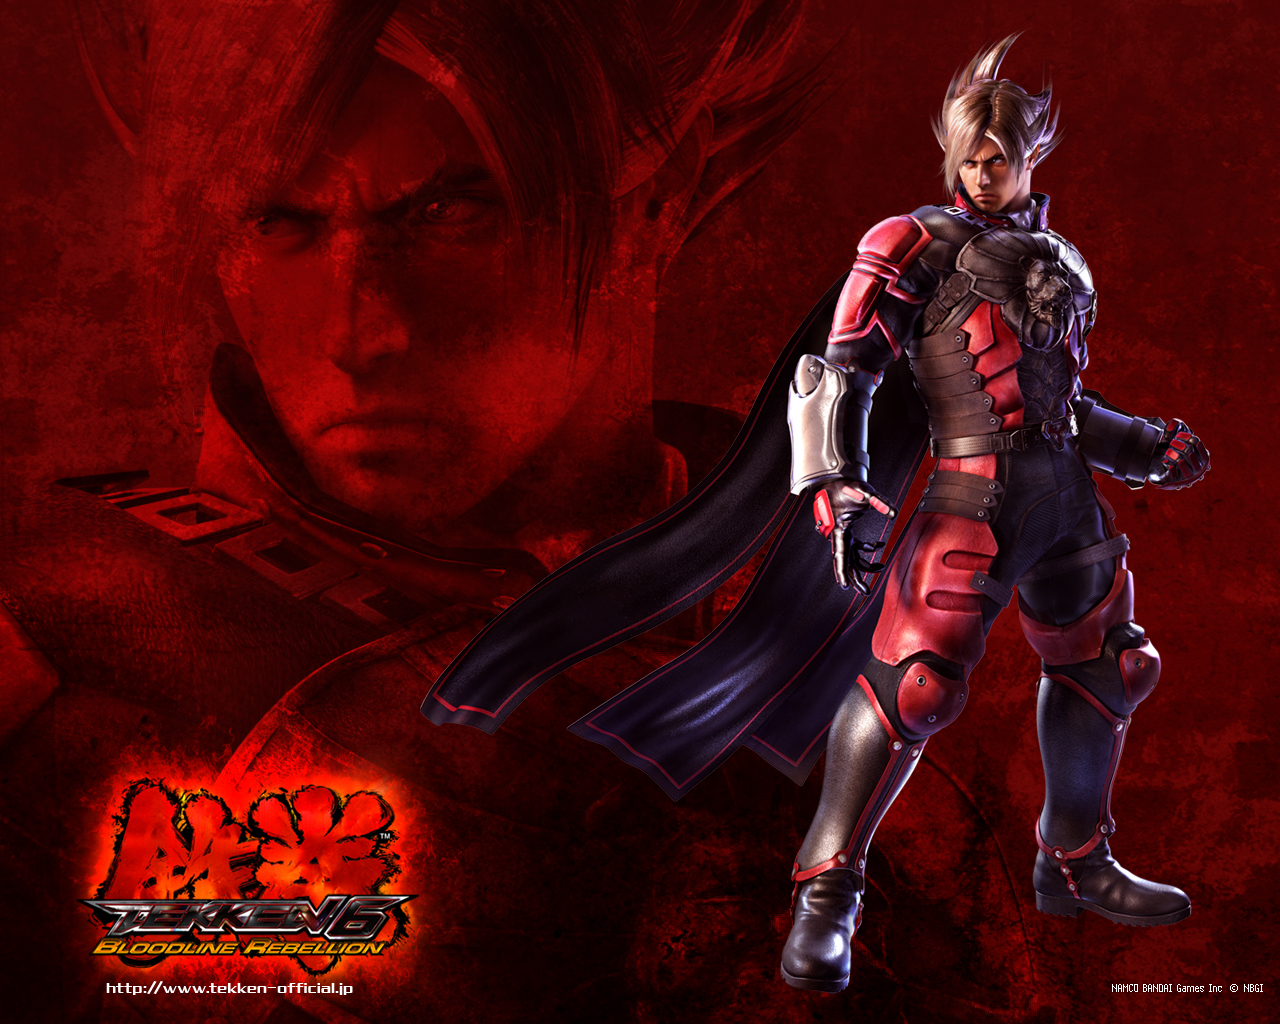 Tekken 6: Bloodline Rebellion Picture